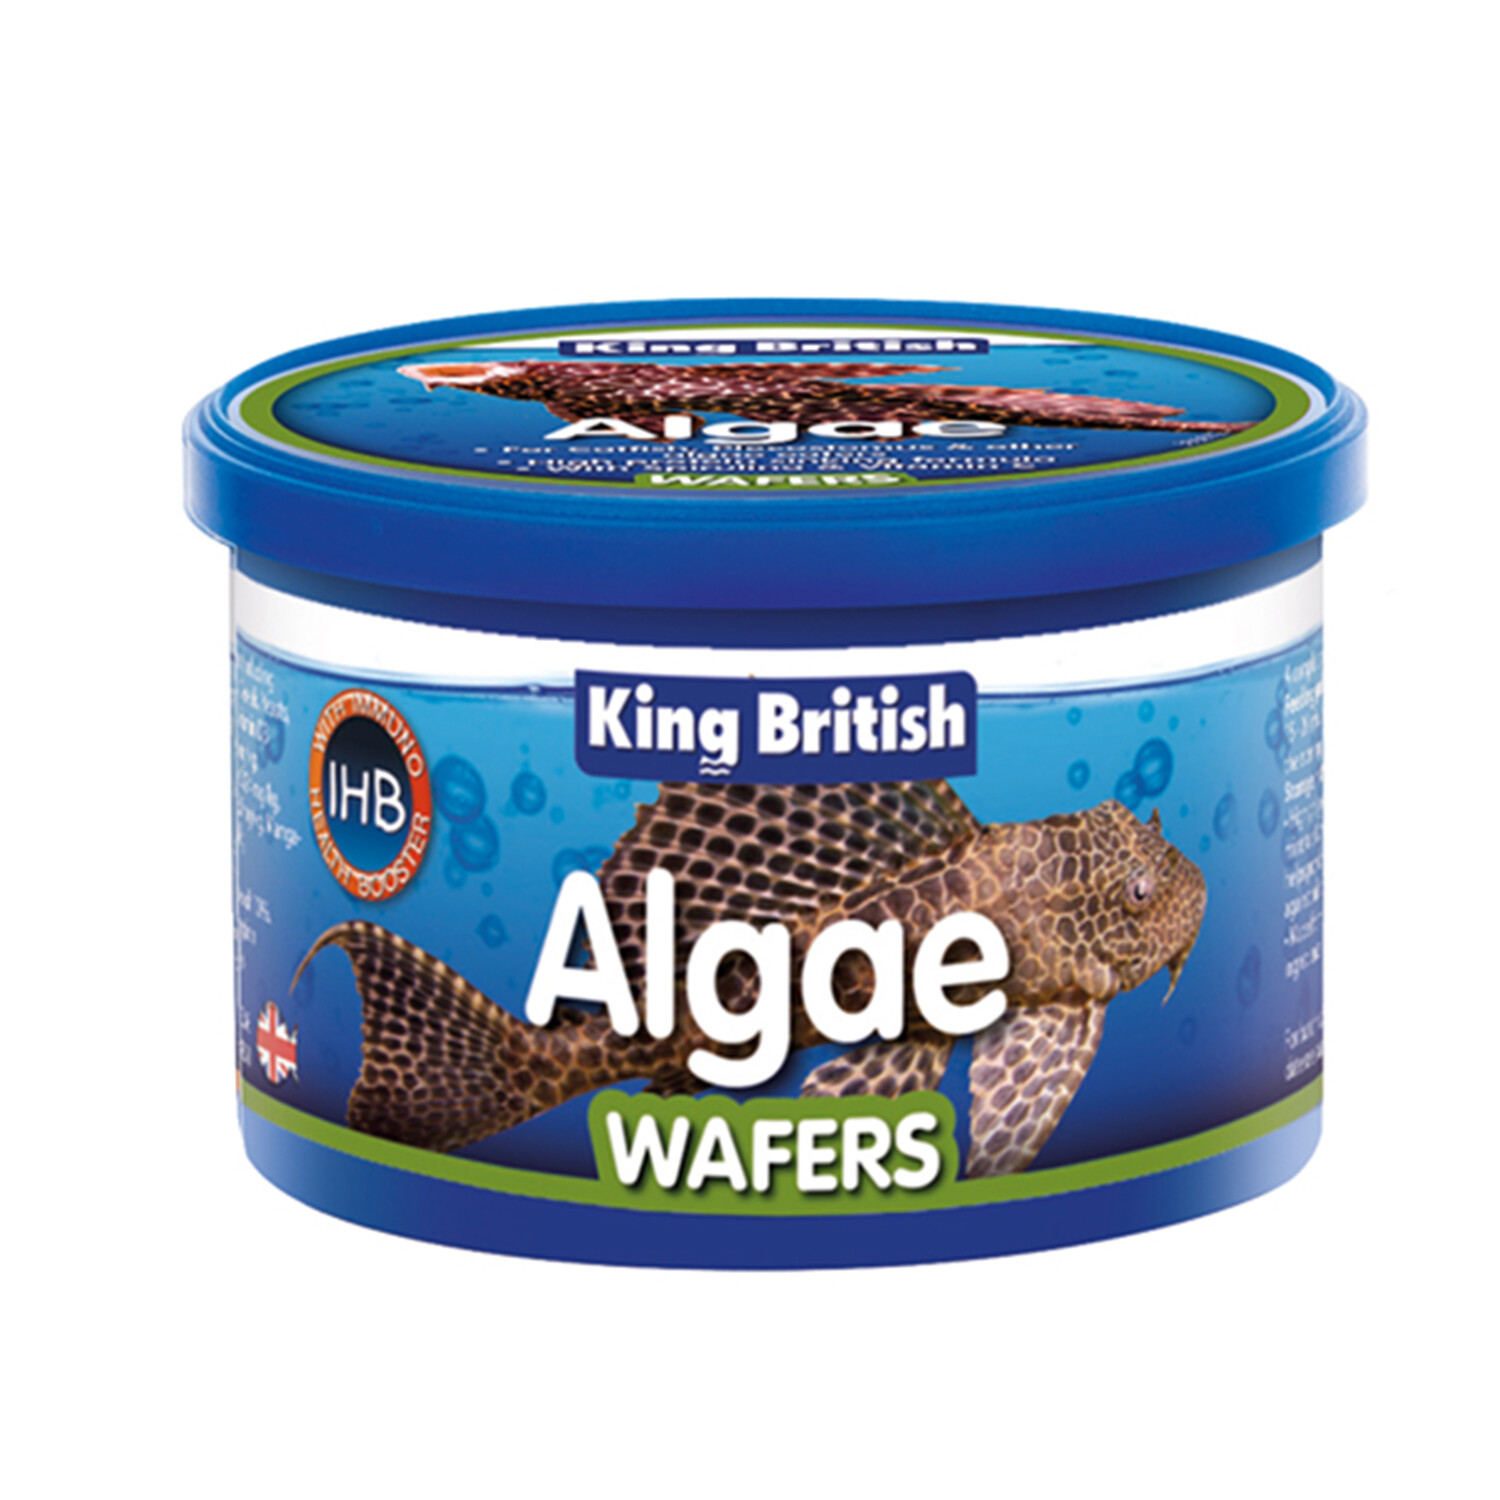 King British Algae Wafers 100g Image